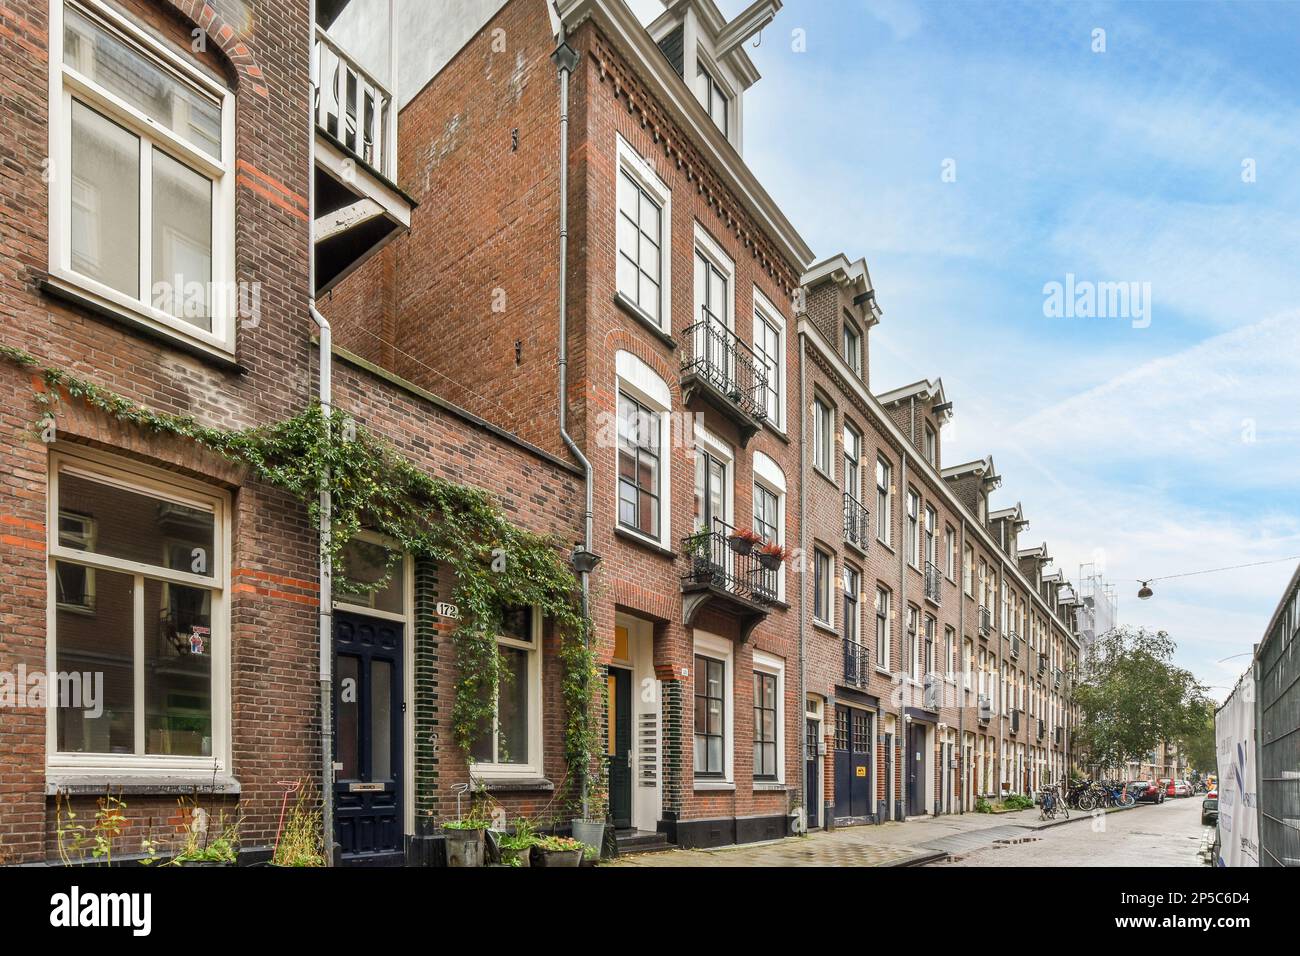 Amsterdam, pays-Bas - 10 avril 2021 : rue de la ville avec des bâtiments en briques des deux côtés et des plantes vertes qui poussent dans les allées le long de la rue Banque D'Images